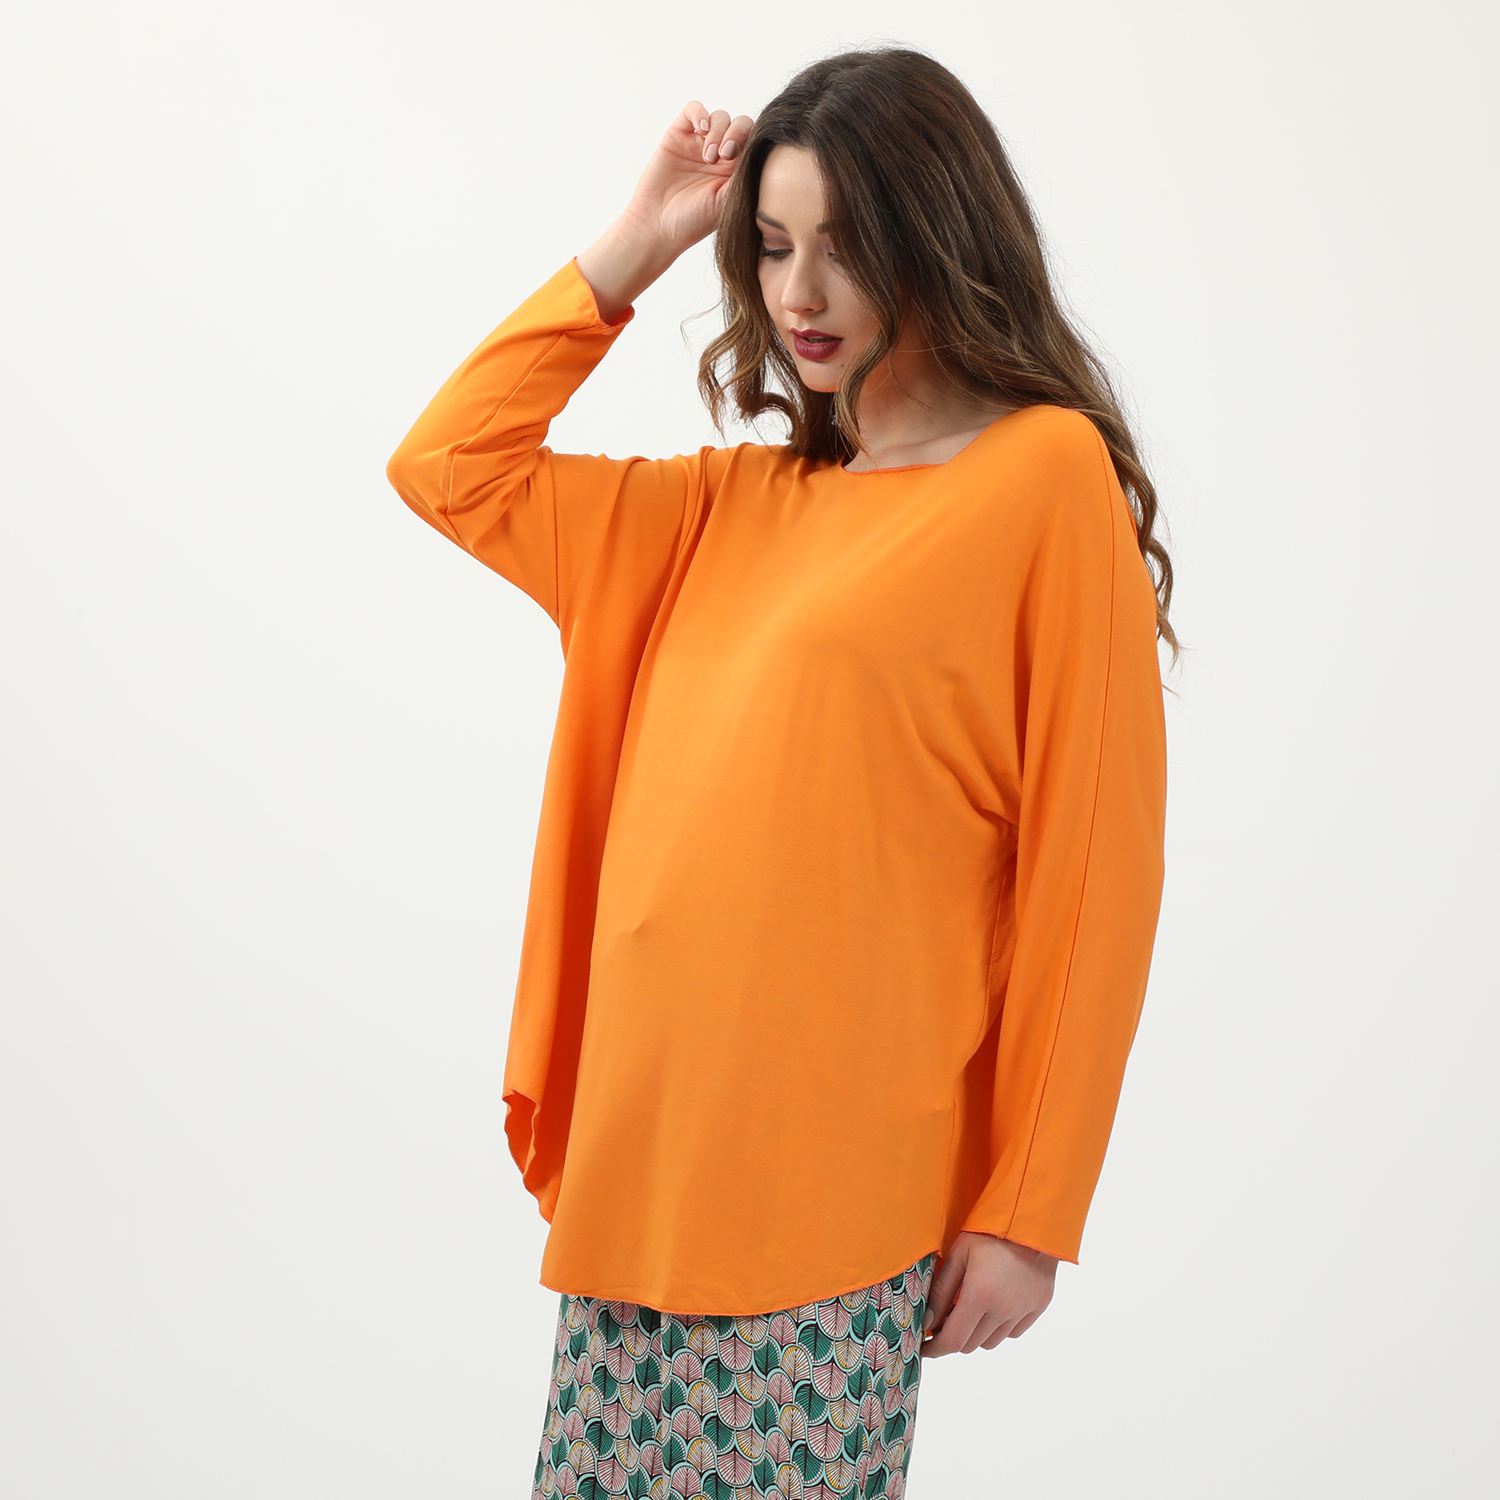 Γυναικεία/Ρούχα/Μπλούζες/Μακρυμάνικες ATTRATTIVO - Γυναικεία μακριά μπλούζα ATTRATTIVO πορτοκαλί